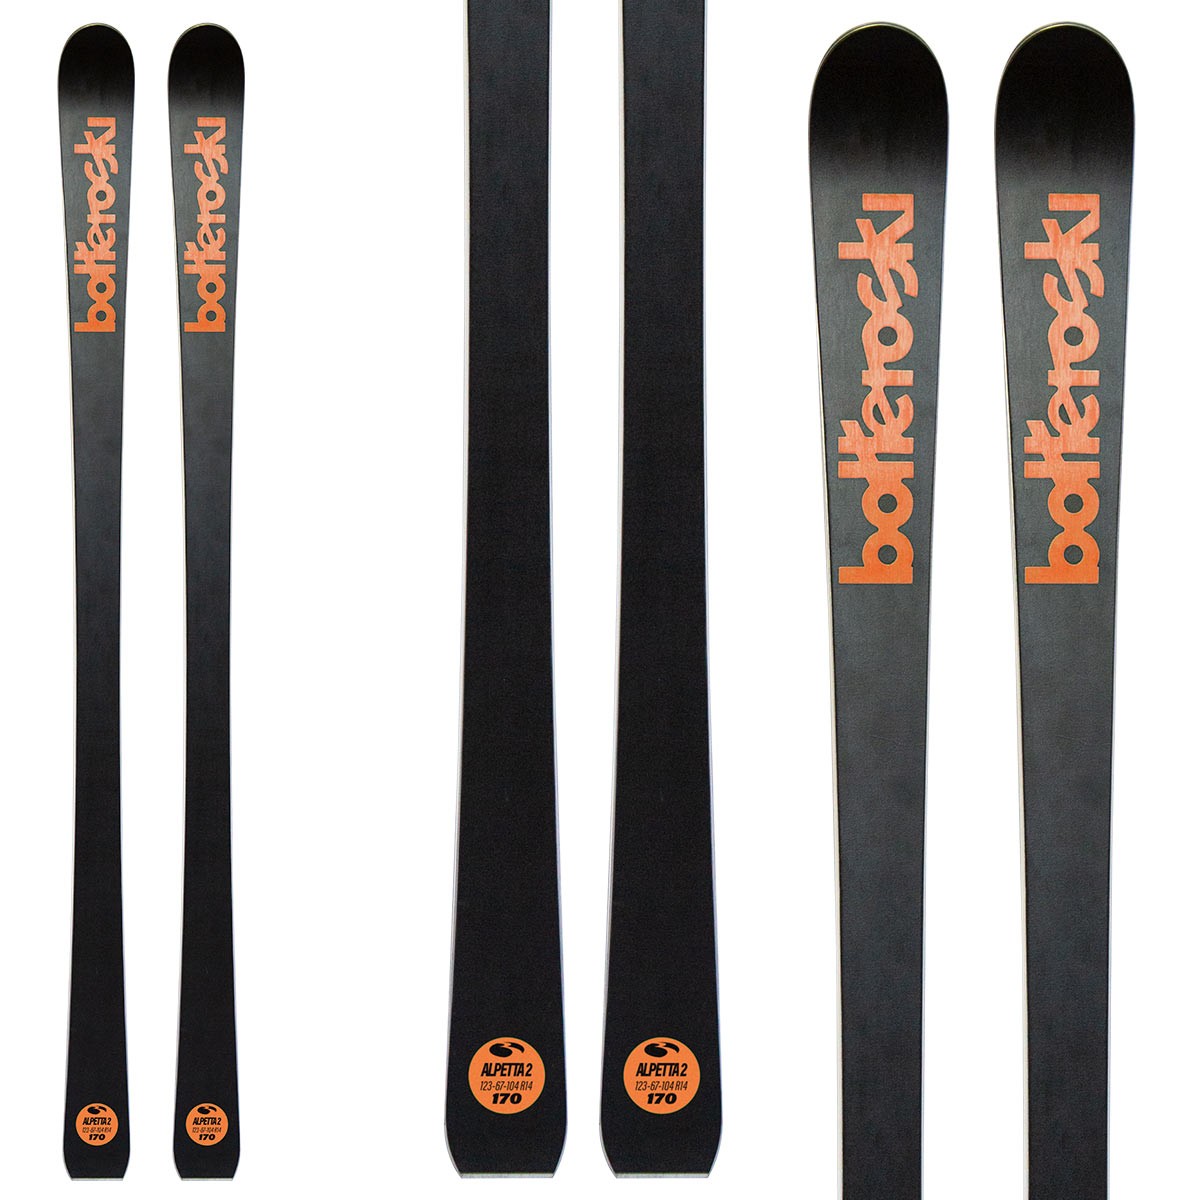  Sci Bottero Ski Alpetta 2 con attacchi VIst Vss412 con piastra Speedspacer (Colore: nero-arancio, Taglia: 153) 